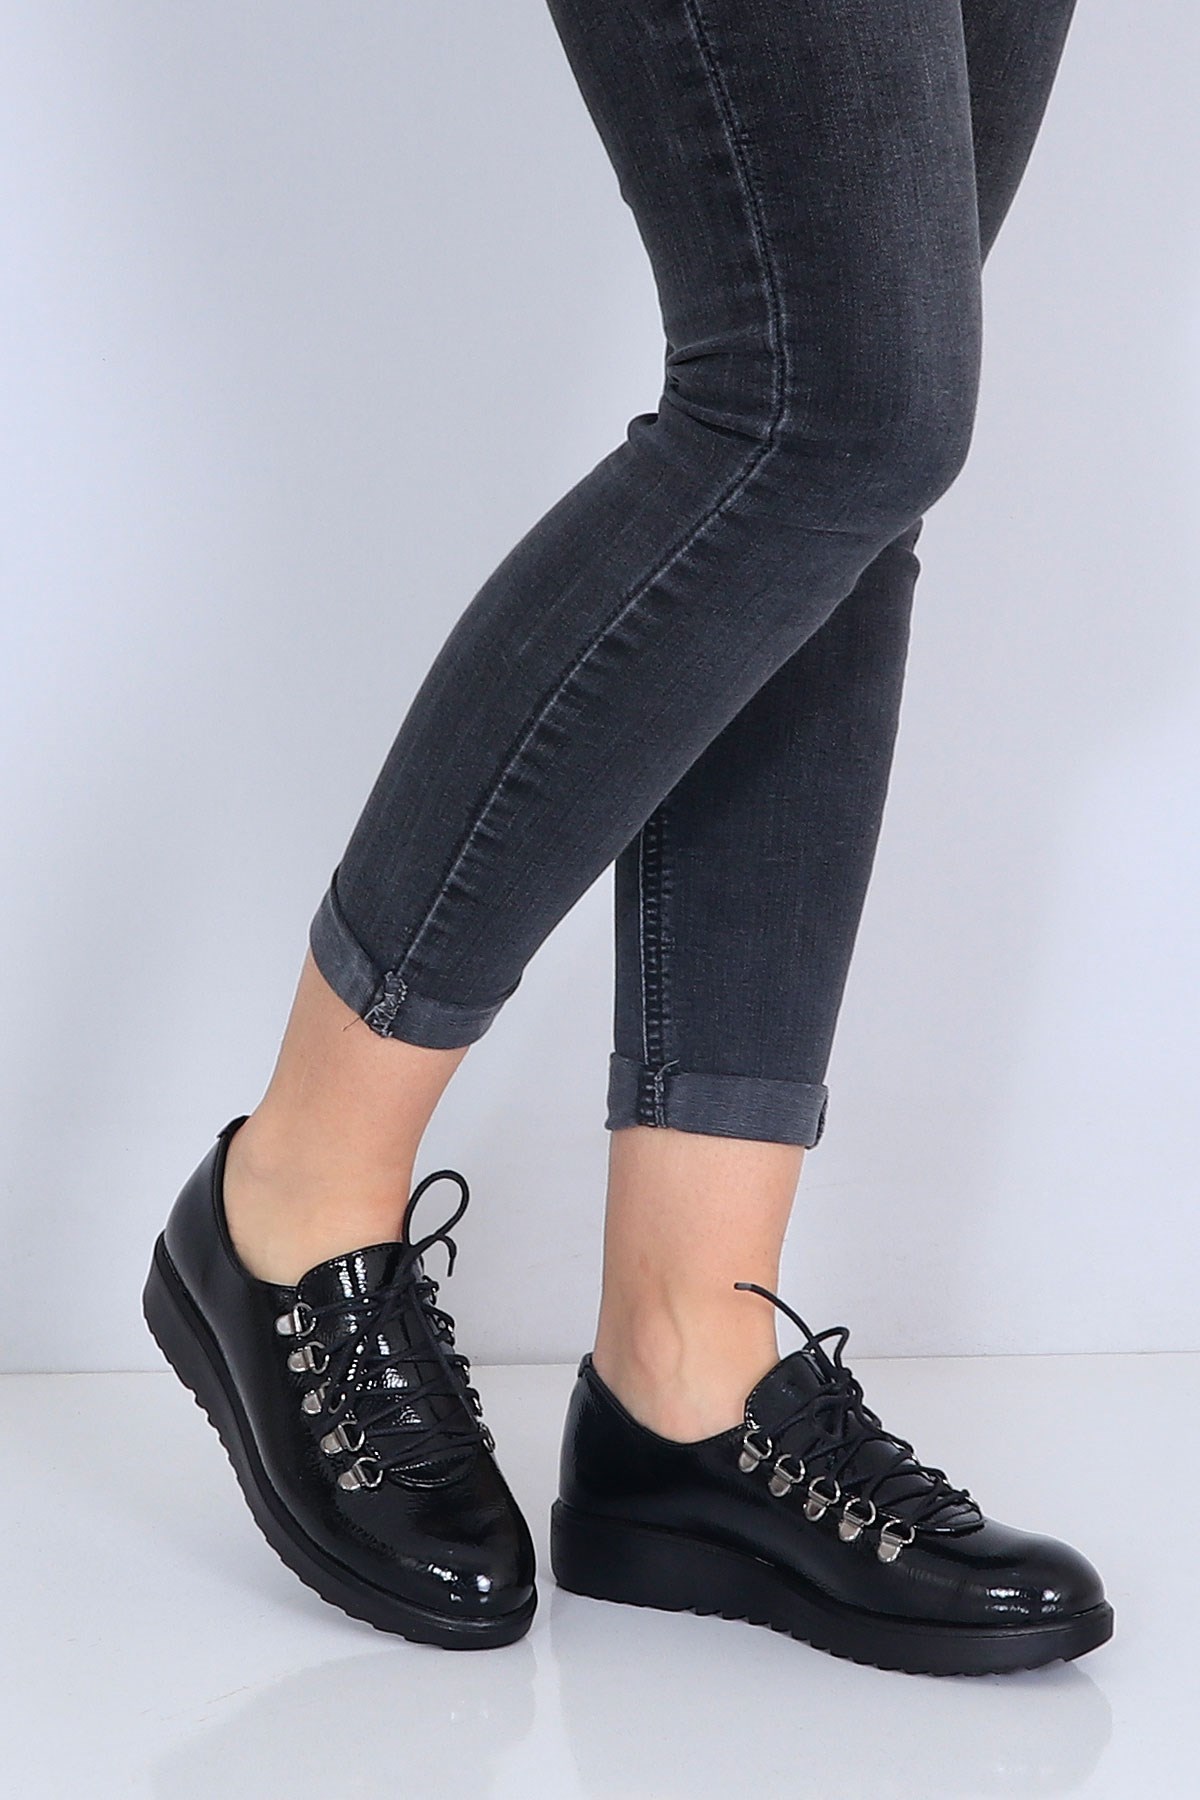 Siyah rugan Düz Taban Kadın Ayakkabı 503 Fiyatı ve Modelleri